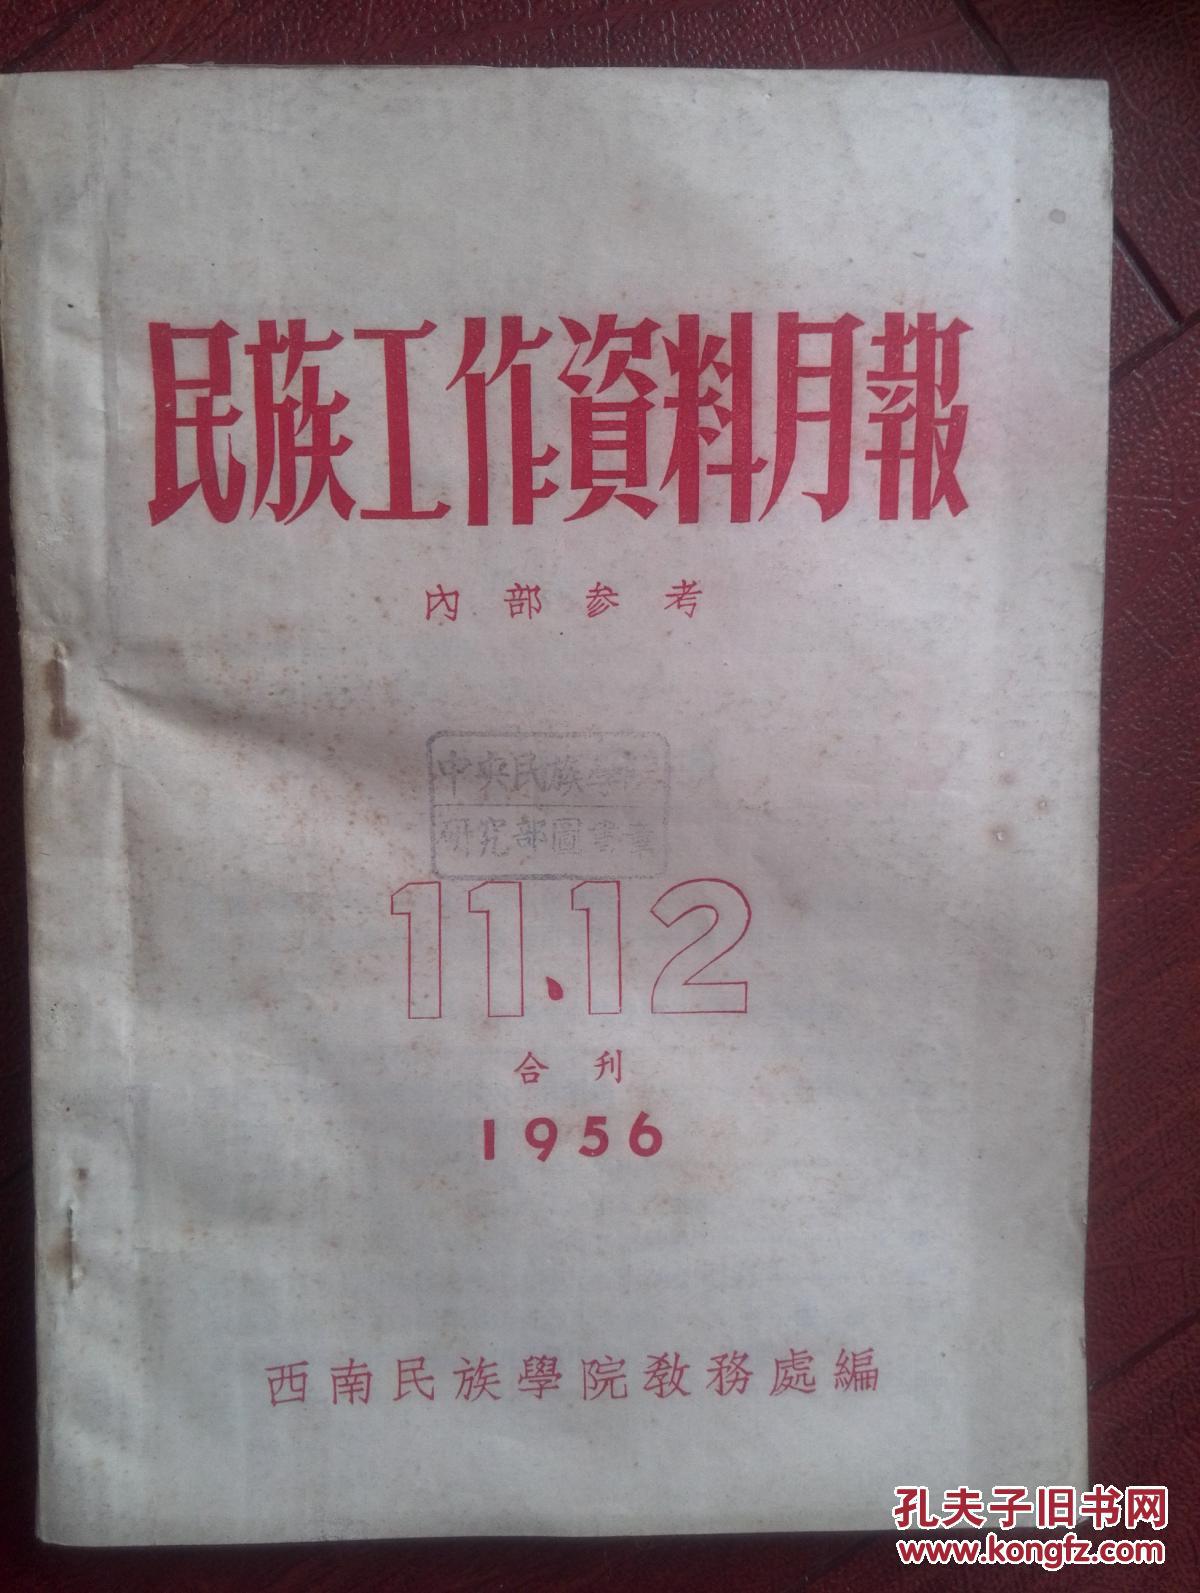 【图】民族工作资料月报1956年第11-12期合刊